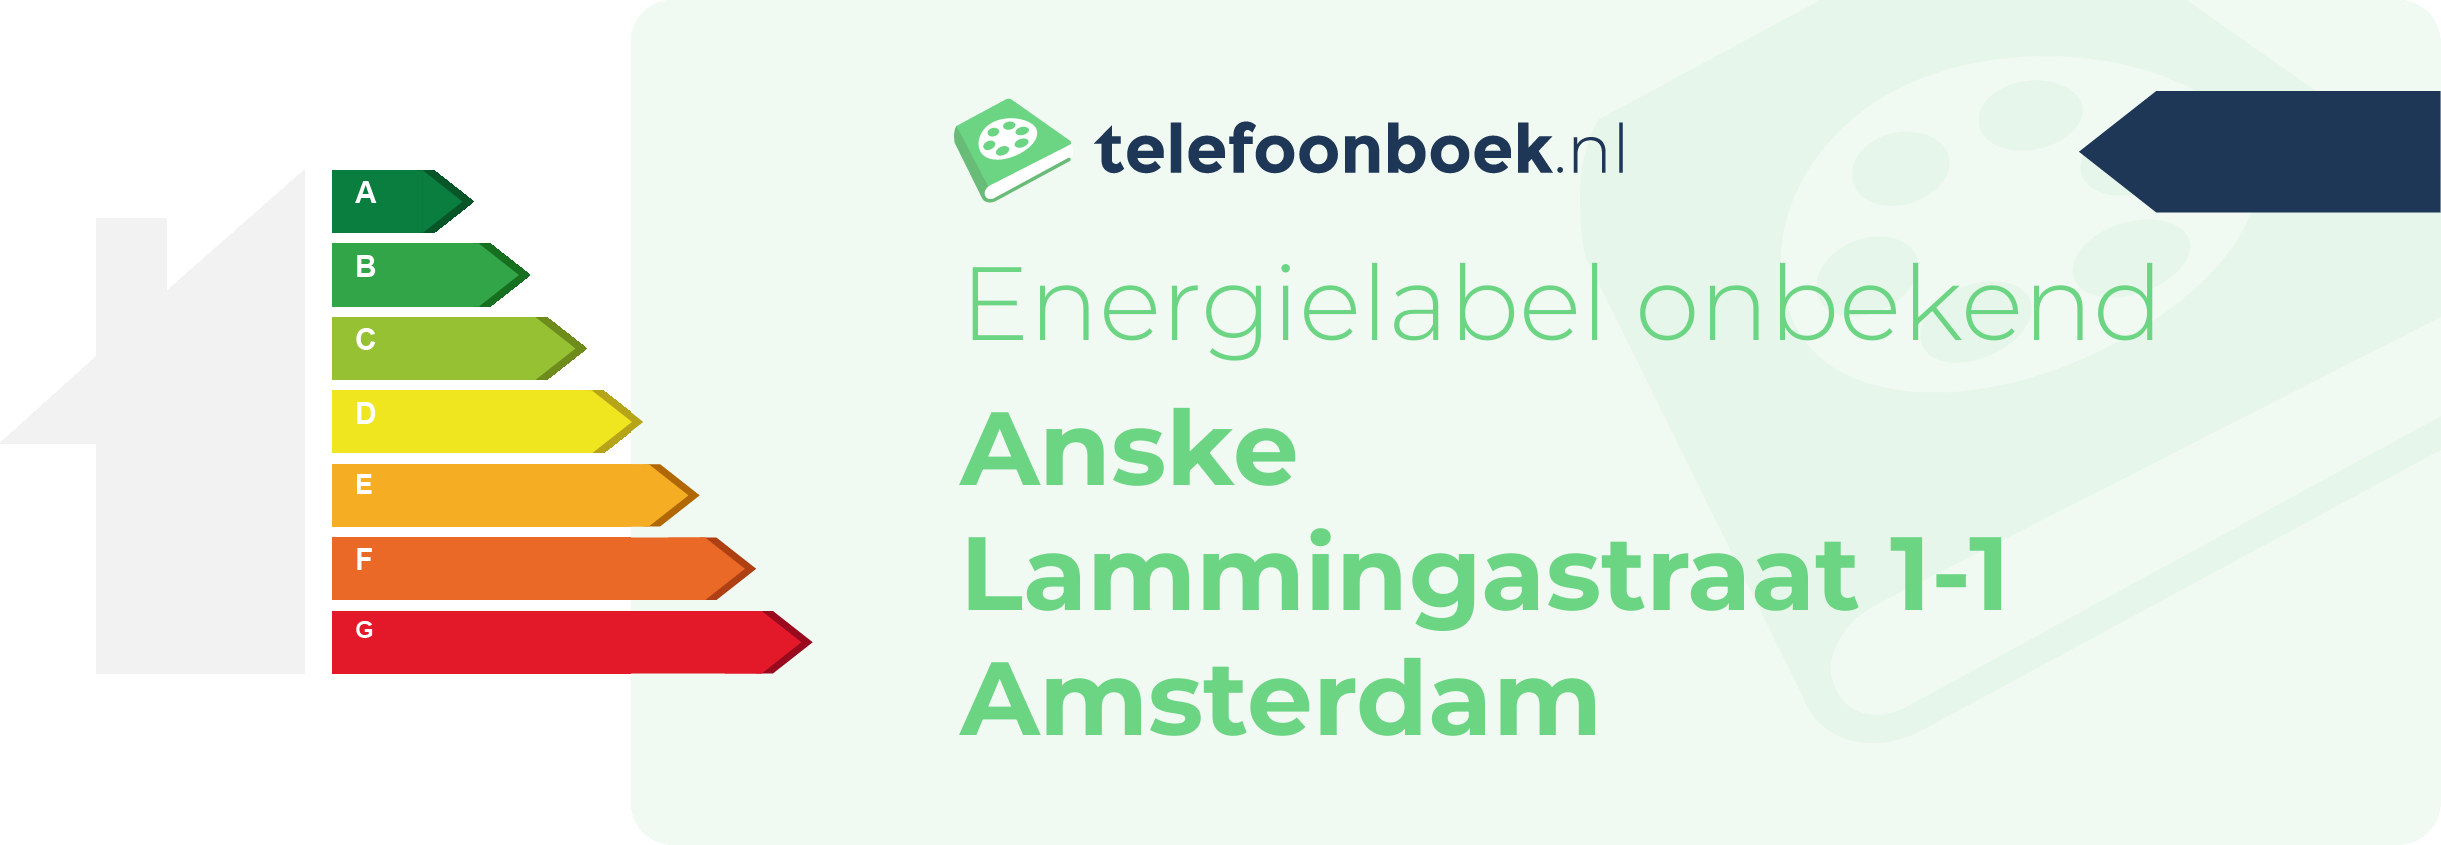 Energielabel Anske Lammingastraat 1-1 Amsterdam